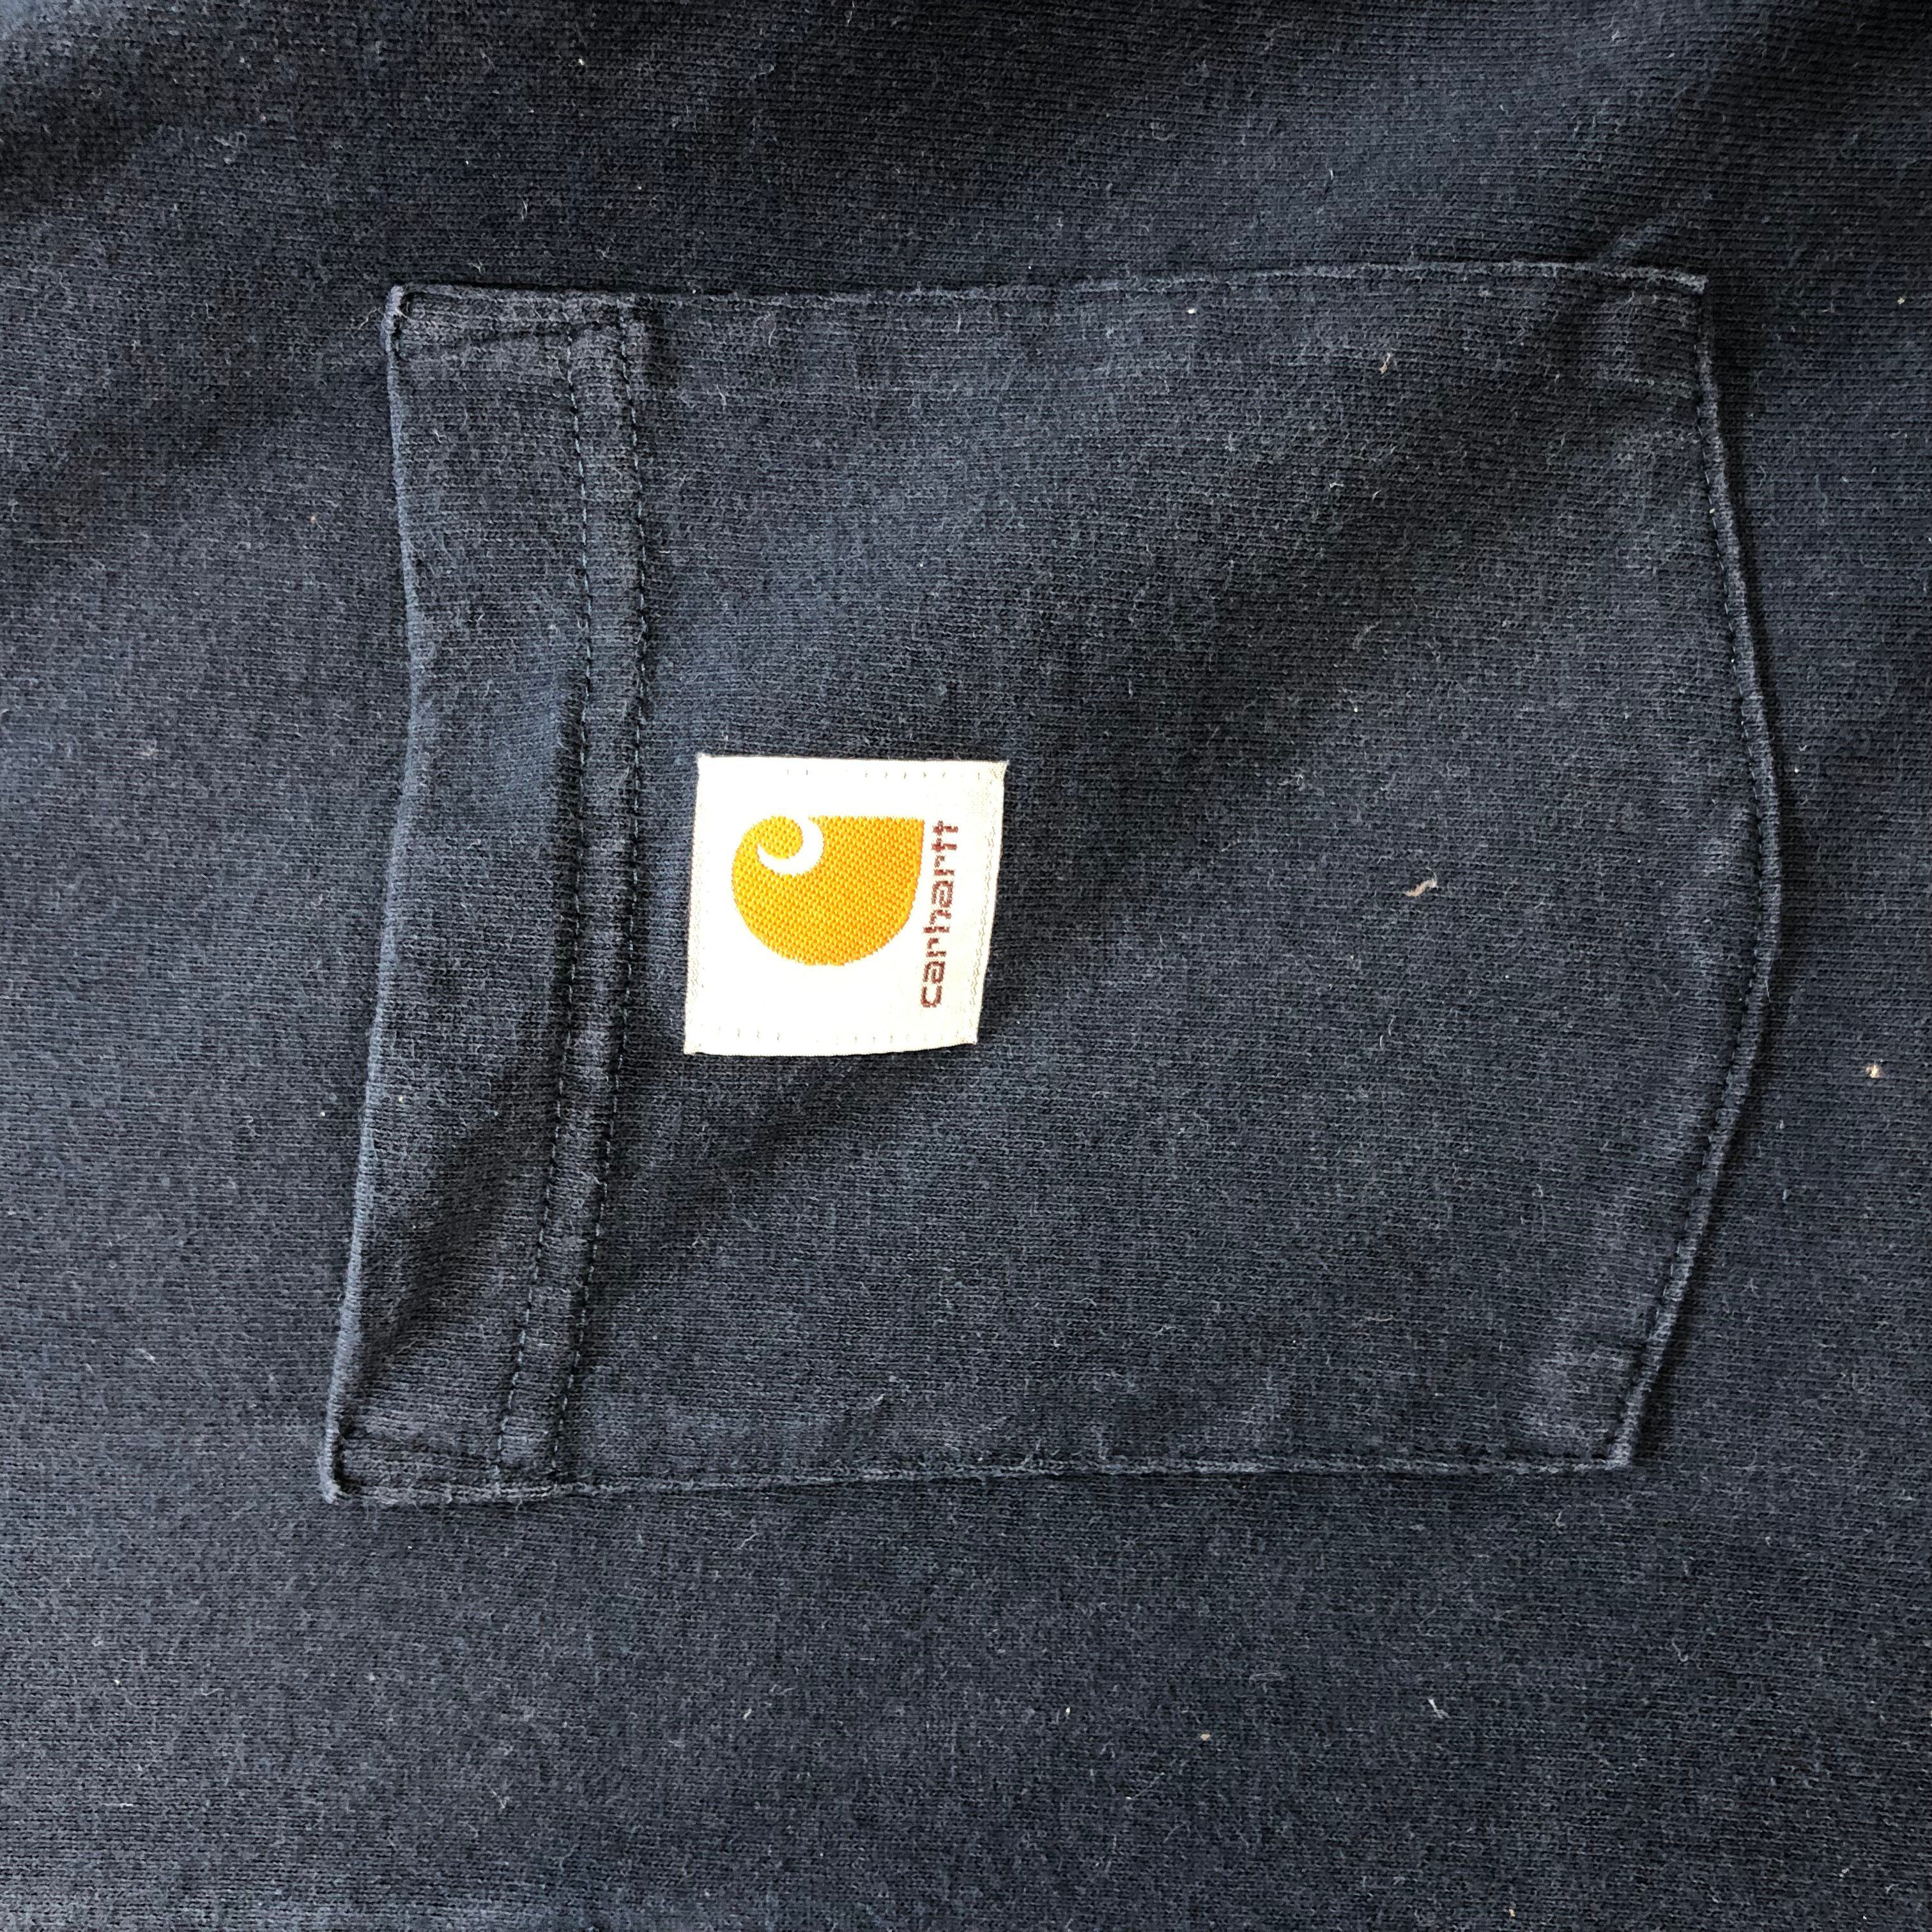 Carhartt Spring 2015 Single Pocket T Shirt #6307-59 - 3